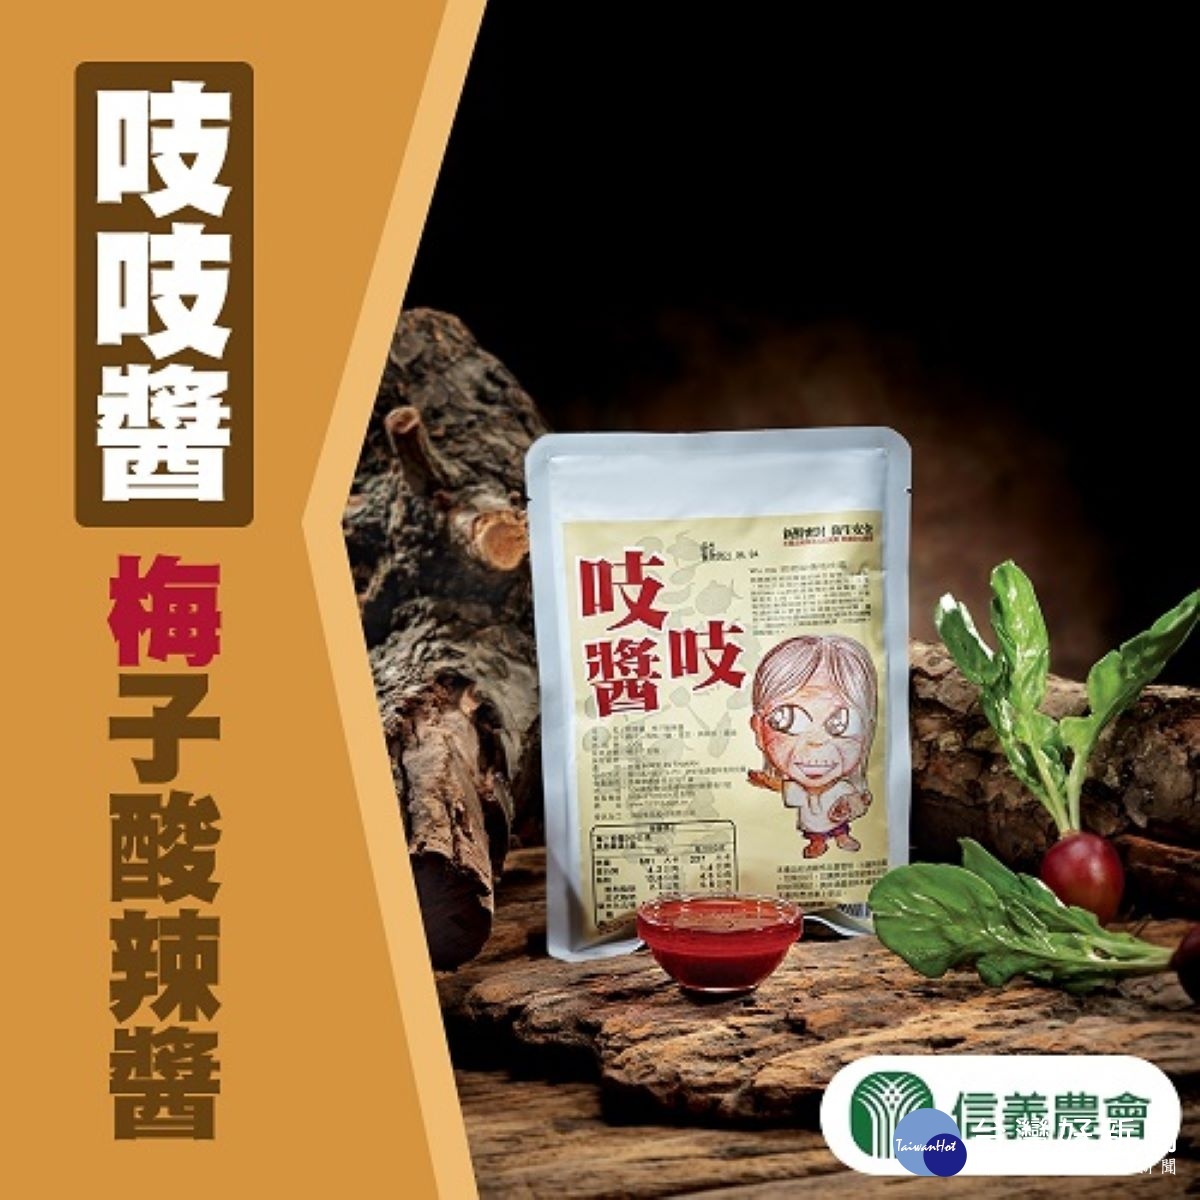 信義鄉農會研發的「吱吱醬-梅子酸辣醬」，可用於調味醬汁、沾醬或各式涼拌。